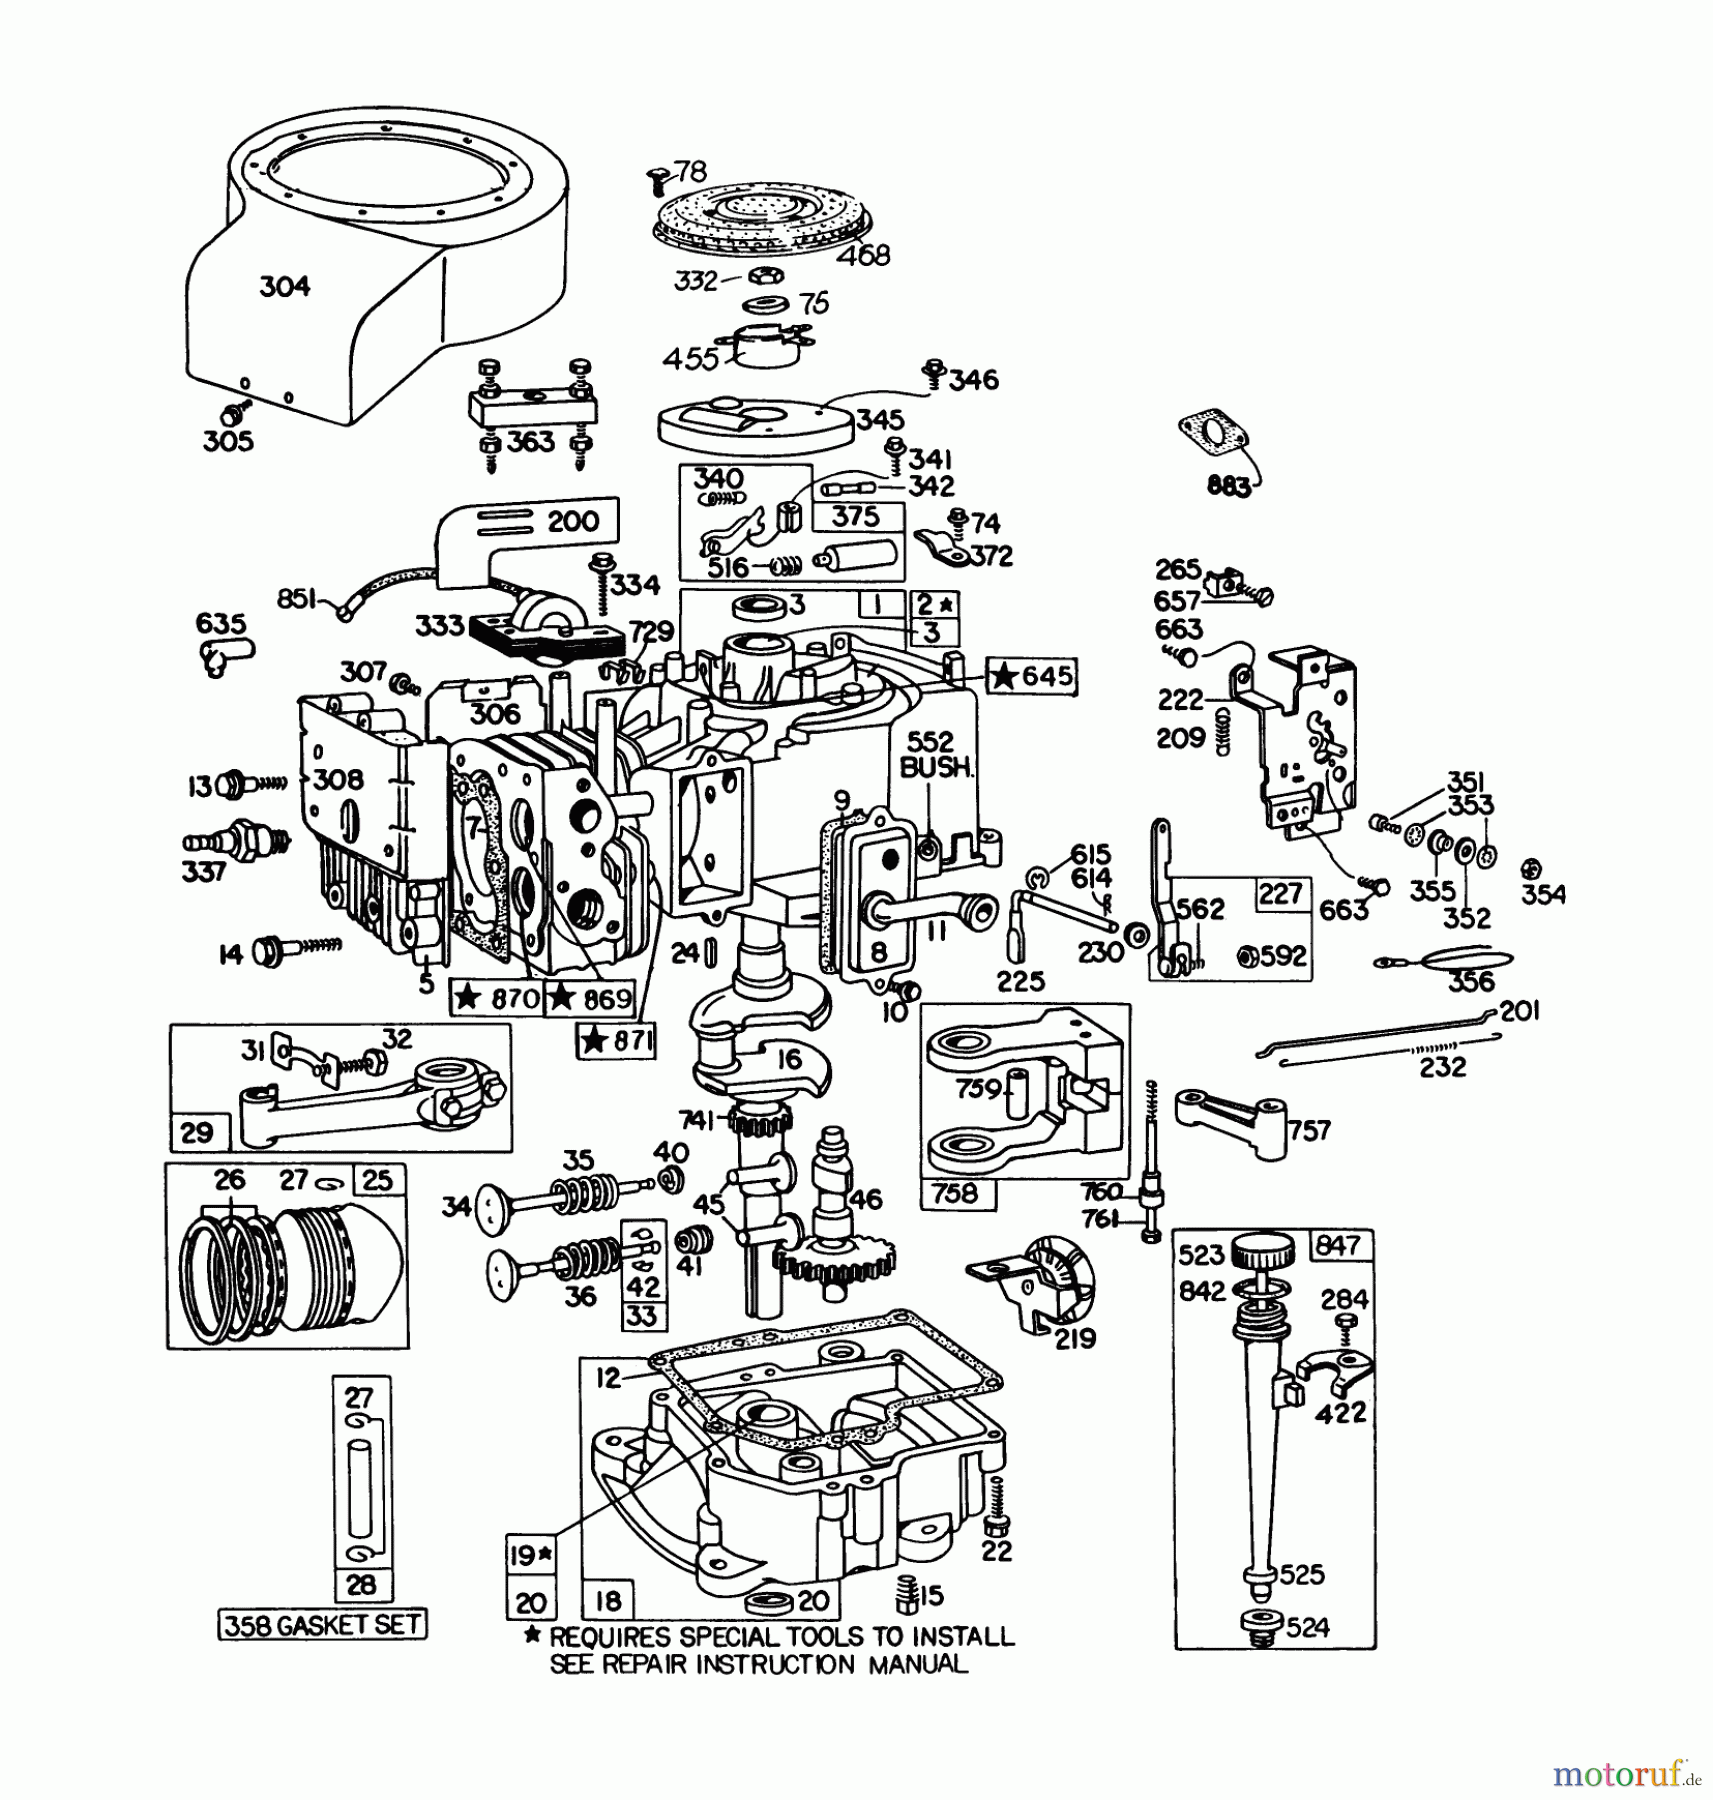  Toro Neu Mowers, Lawn & Garden Tractor Seite 1 57360 (11-32) - Toro 11-32 Lawn Tractor, 1979 (9000001-9999999) ENGINE BRIGGS & STRATTON MODEL 191707-5641-01 (MODEL 57300)